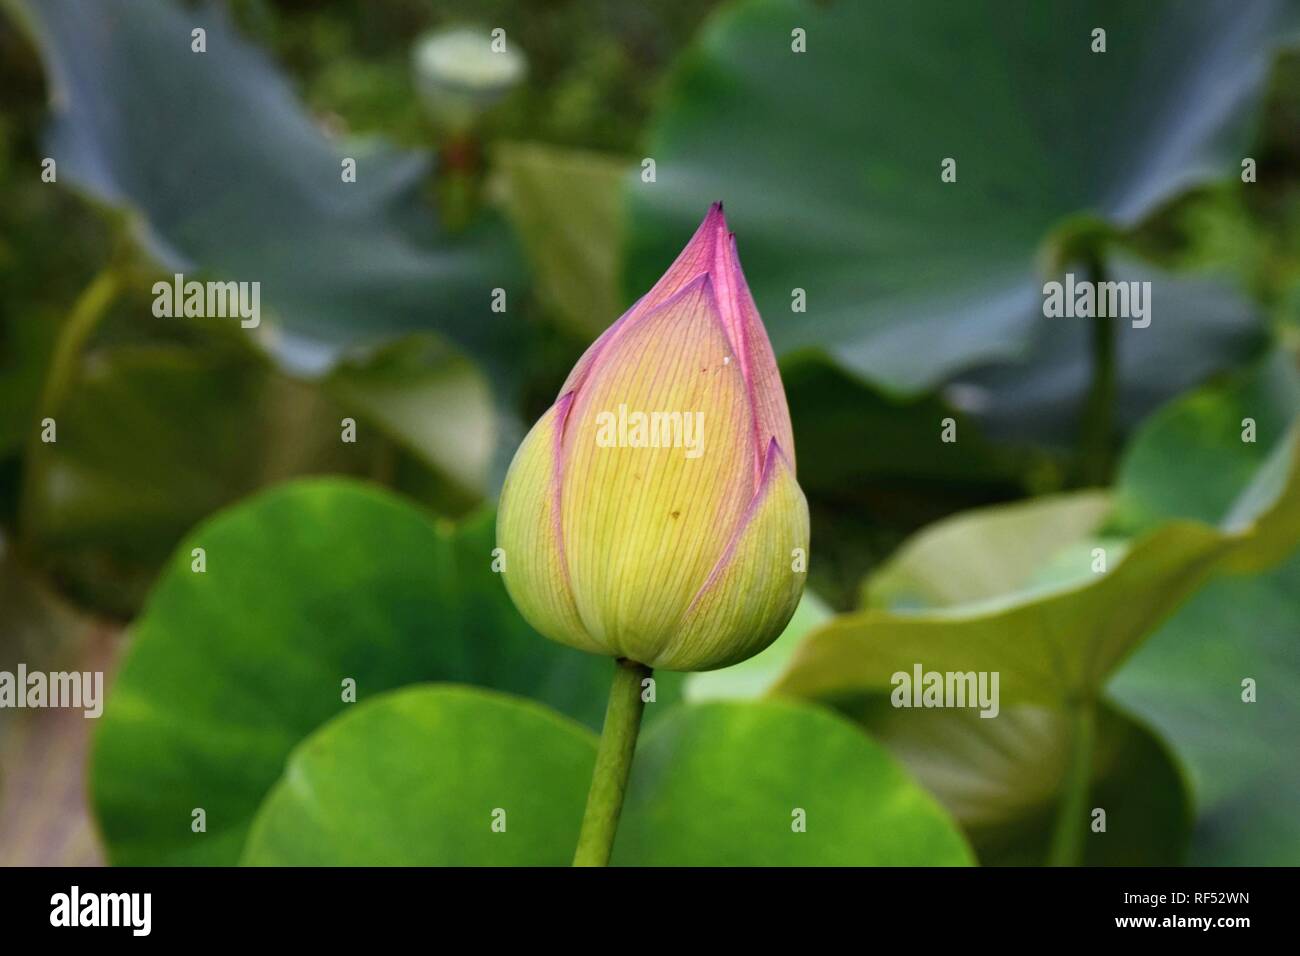 Flor de Loto - símbolo de la divina belleza y pureza. Foto de stock